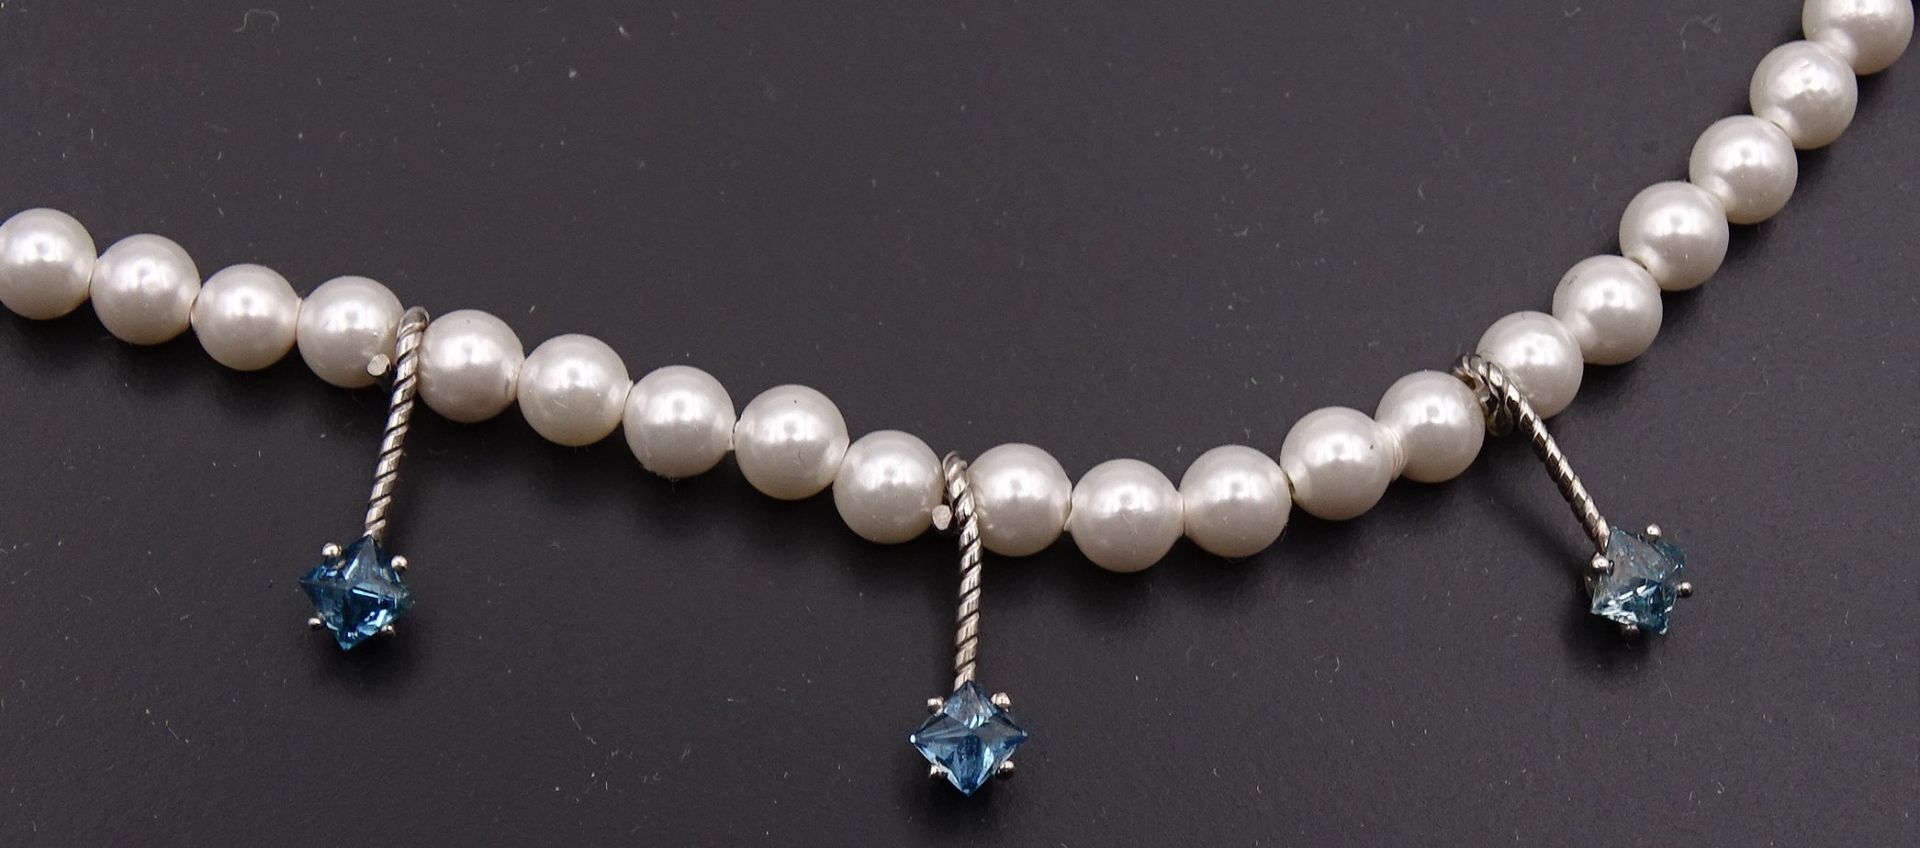 Perlen Halskette mit blauen Diamanten zus. 0,45ct., Gold 14K , L. 42cm, Perlen D. 3,9mm, 9,6g. - Bild 4 aus 6